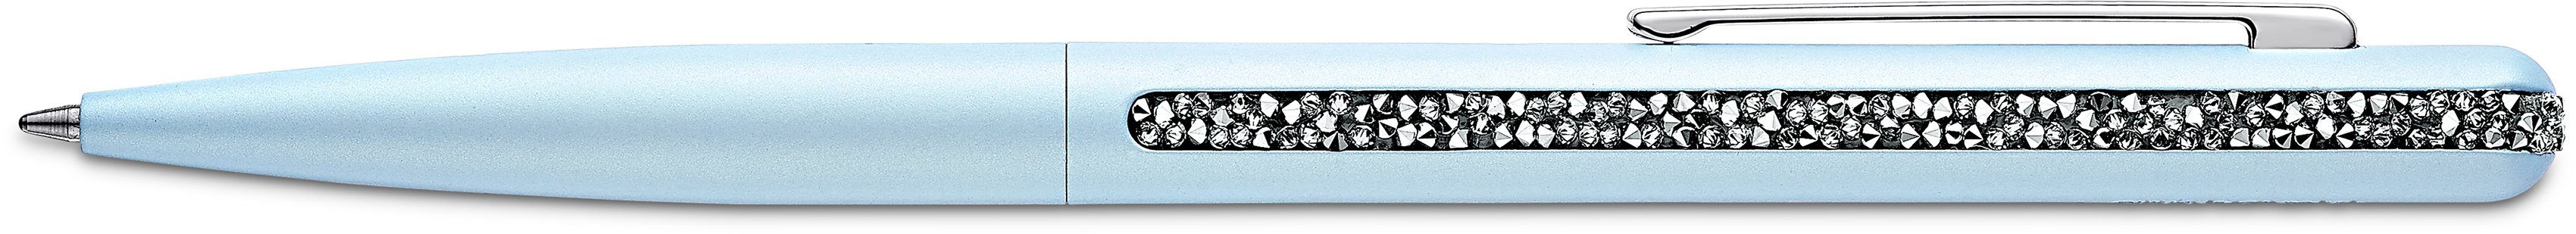 Kristallen Crystal mit 5595671, Swarovski® 5595667, Swarovski 5595668, Shimmer, hellblau-metallfarben-kristallweiß 5595673, 5595669, Kugelschreiber 5595672,